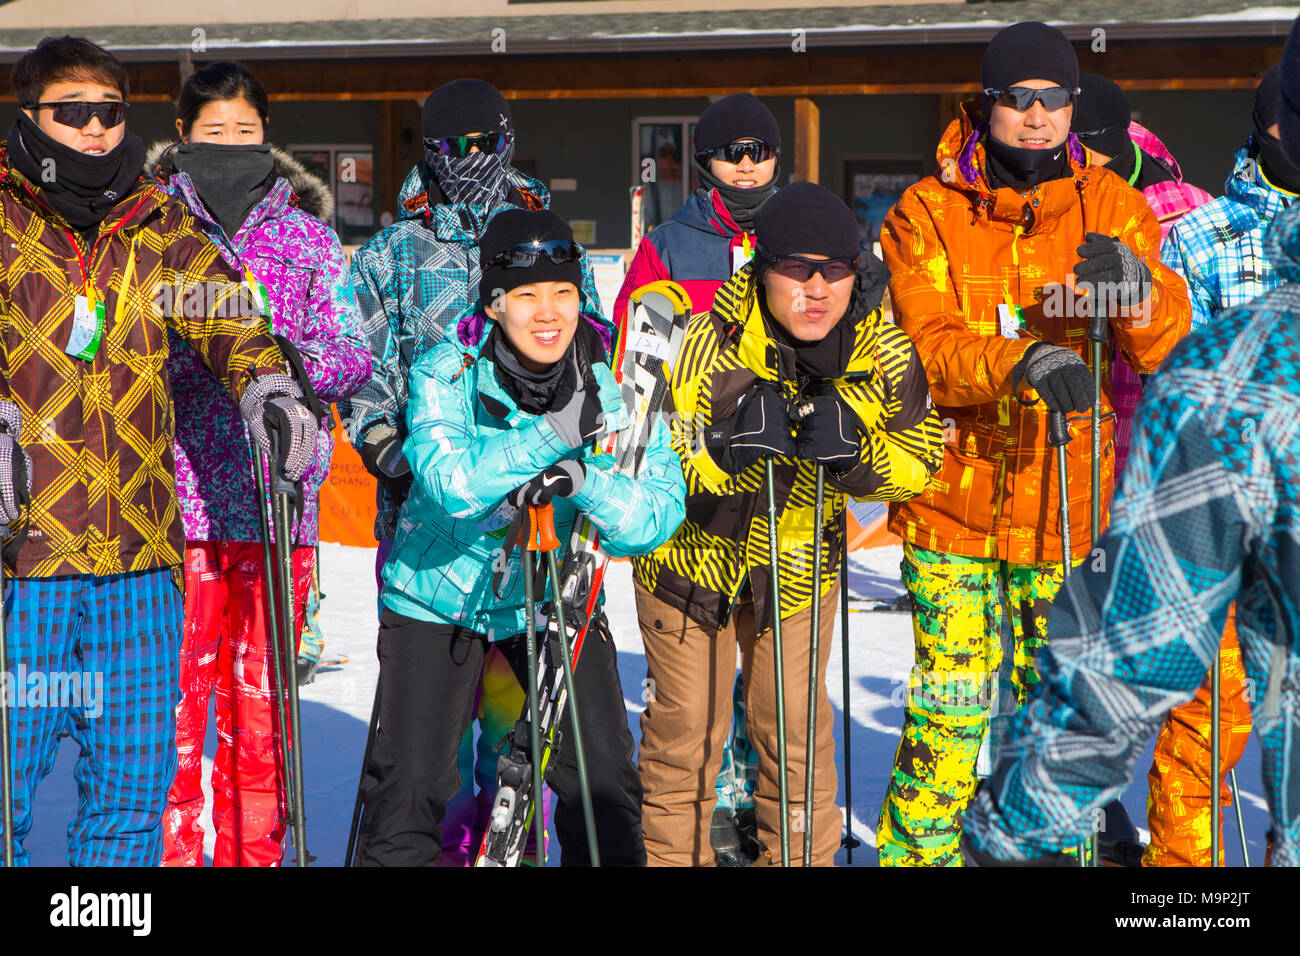 Un gruppo di giovani coreani presso il resort Alpensia in Corea del Sud. Tradizionalmente gli sciatori vestito in colori luminosi tute da sci. Il Alpensia Resort è una località sciistica e una attrazione turistica. Esso si trova sul territorio del comune di Daegwallyeong-myeon, nella contea di Pyeongchang, ospitando le Olimpiadi Invernali nel febbraio 2018. La stazione sciistica è di circa 2 ore e mezzo da Seoul o dall'Aeroporto di Incheon in auto, prevalentemente tutti autostrada. Alpensia dispone di 6 piste per lo sci e lo snowboard, con corse fino a 1,4 km (0,87 mi) lungo, per principianti e progrediti, e un'area riservata Foto Stock